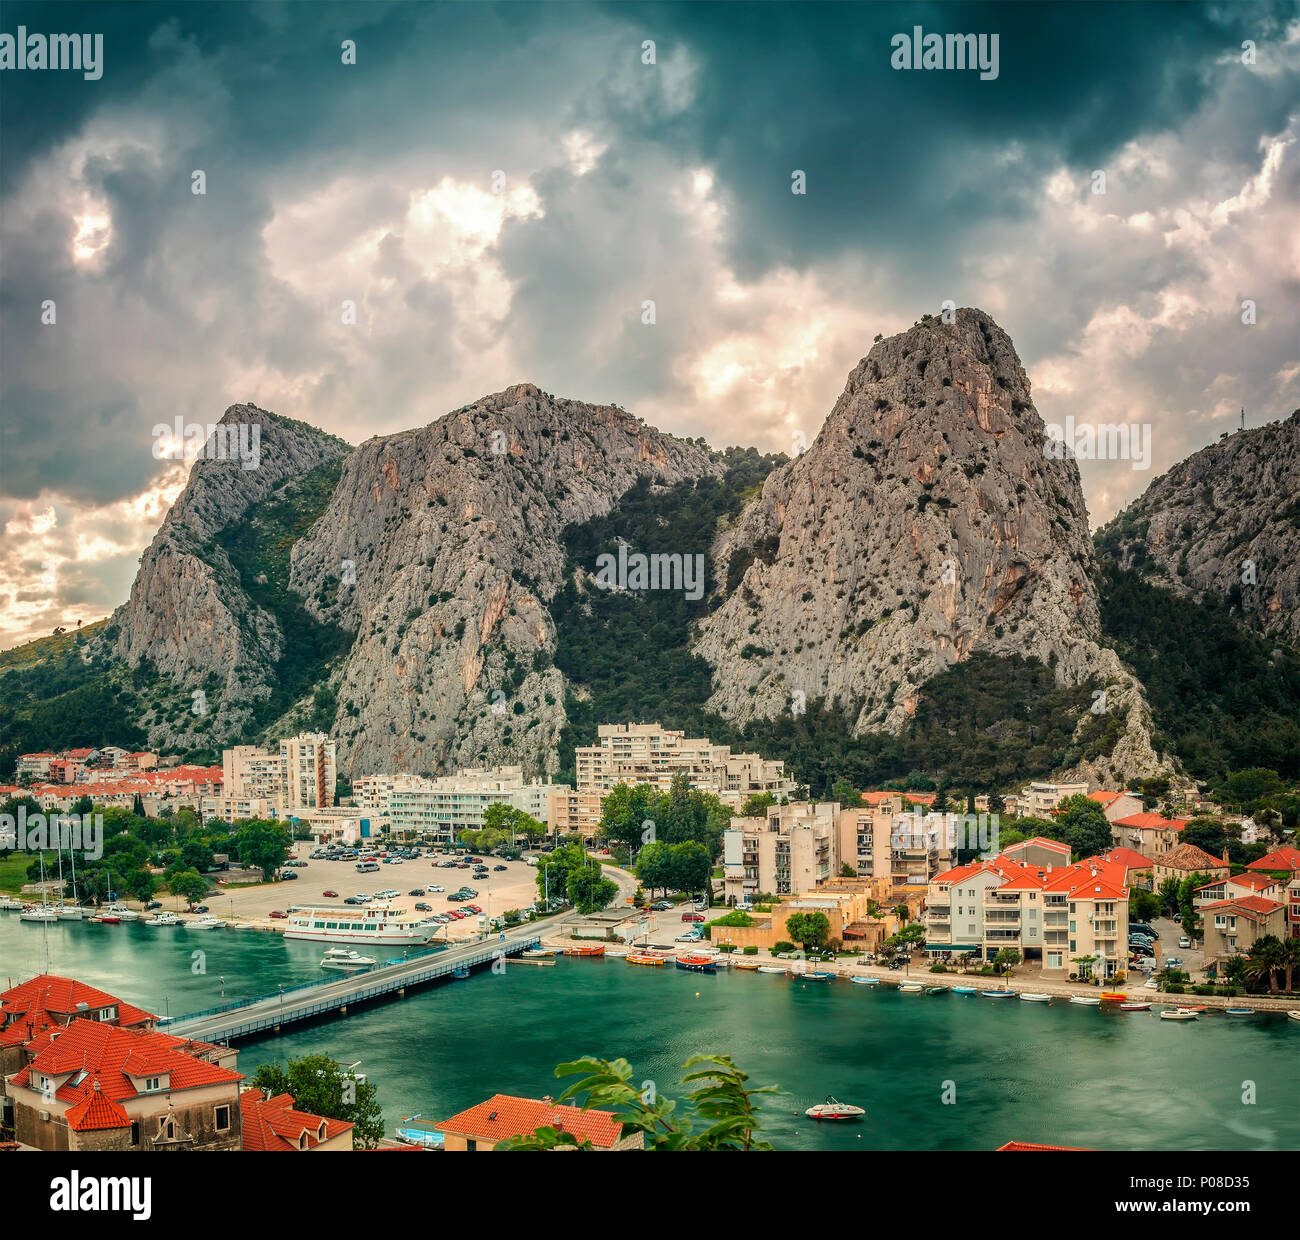 La ville de Supetar avec la rivière Cetina et des montagnes, la Croatie. Banque D'Images